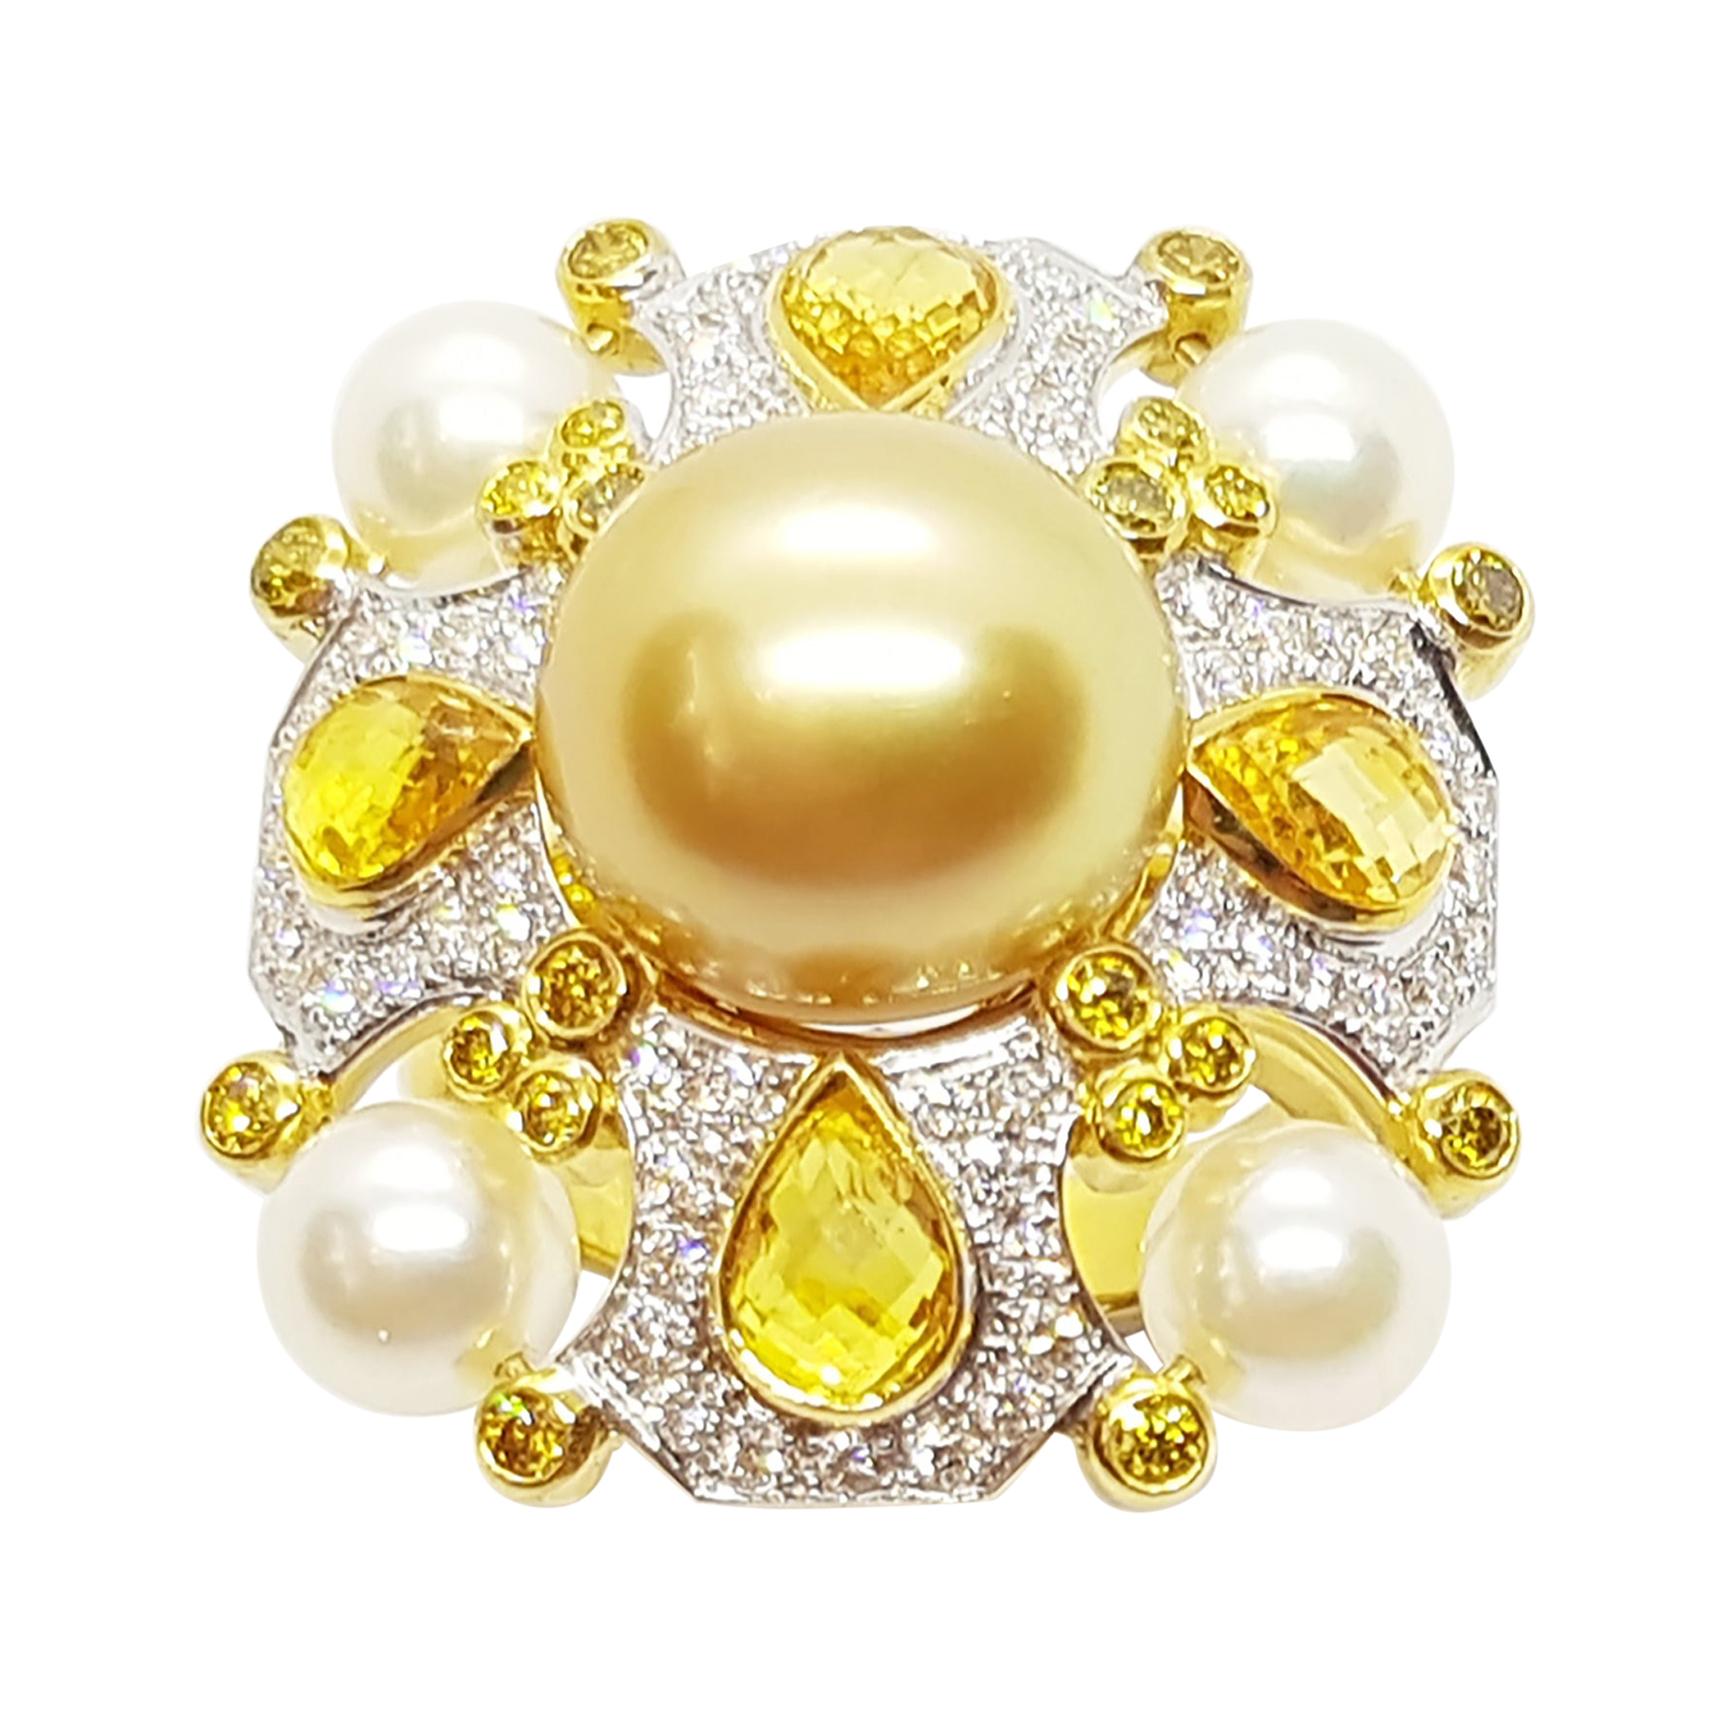 Bague en or 18 carats avec perle des mers du Sud dorée, perle d'eau douce et saphir jaune